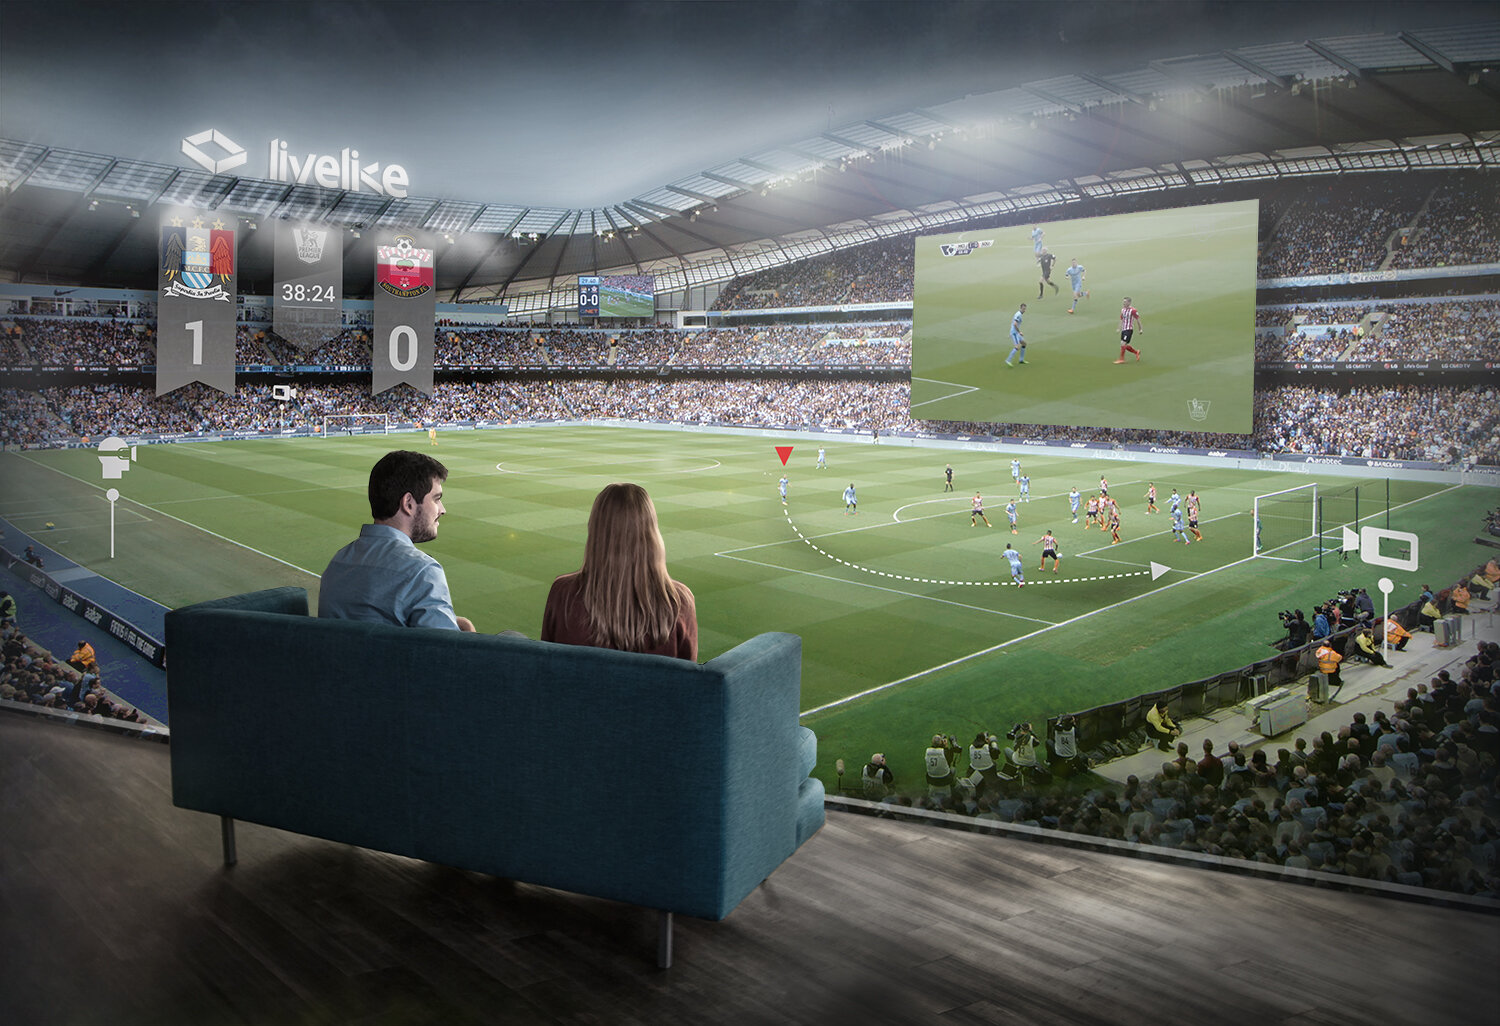 Stadium Augmented Man City 6 light (1)